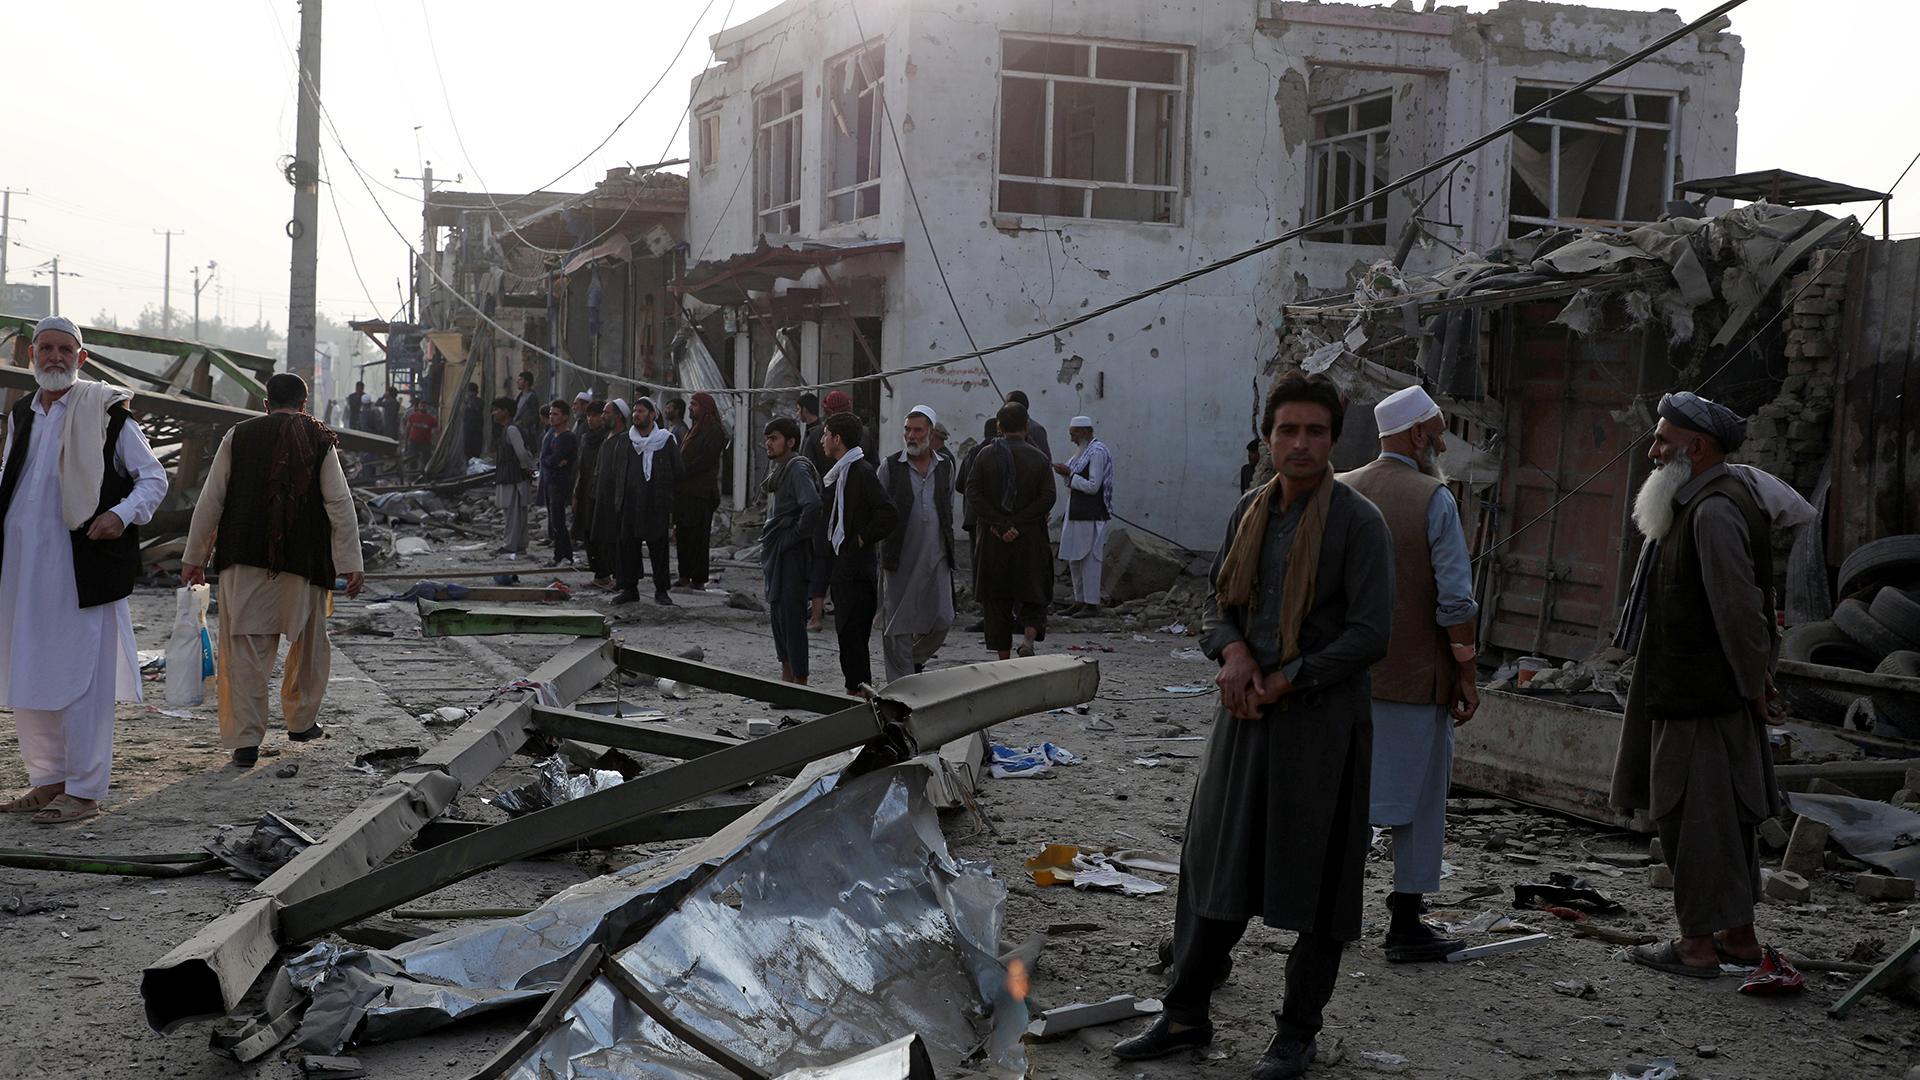 Последние новости про теракт. Афганистан теракт талибы. Кабул 1997. Терракиы вафганестане 2001.